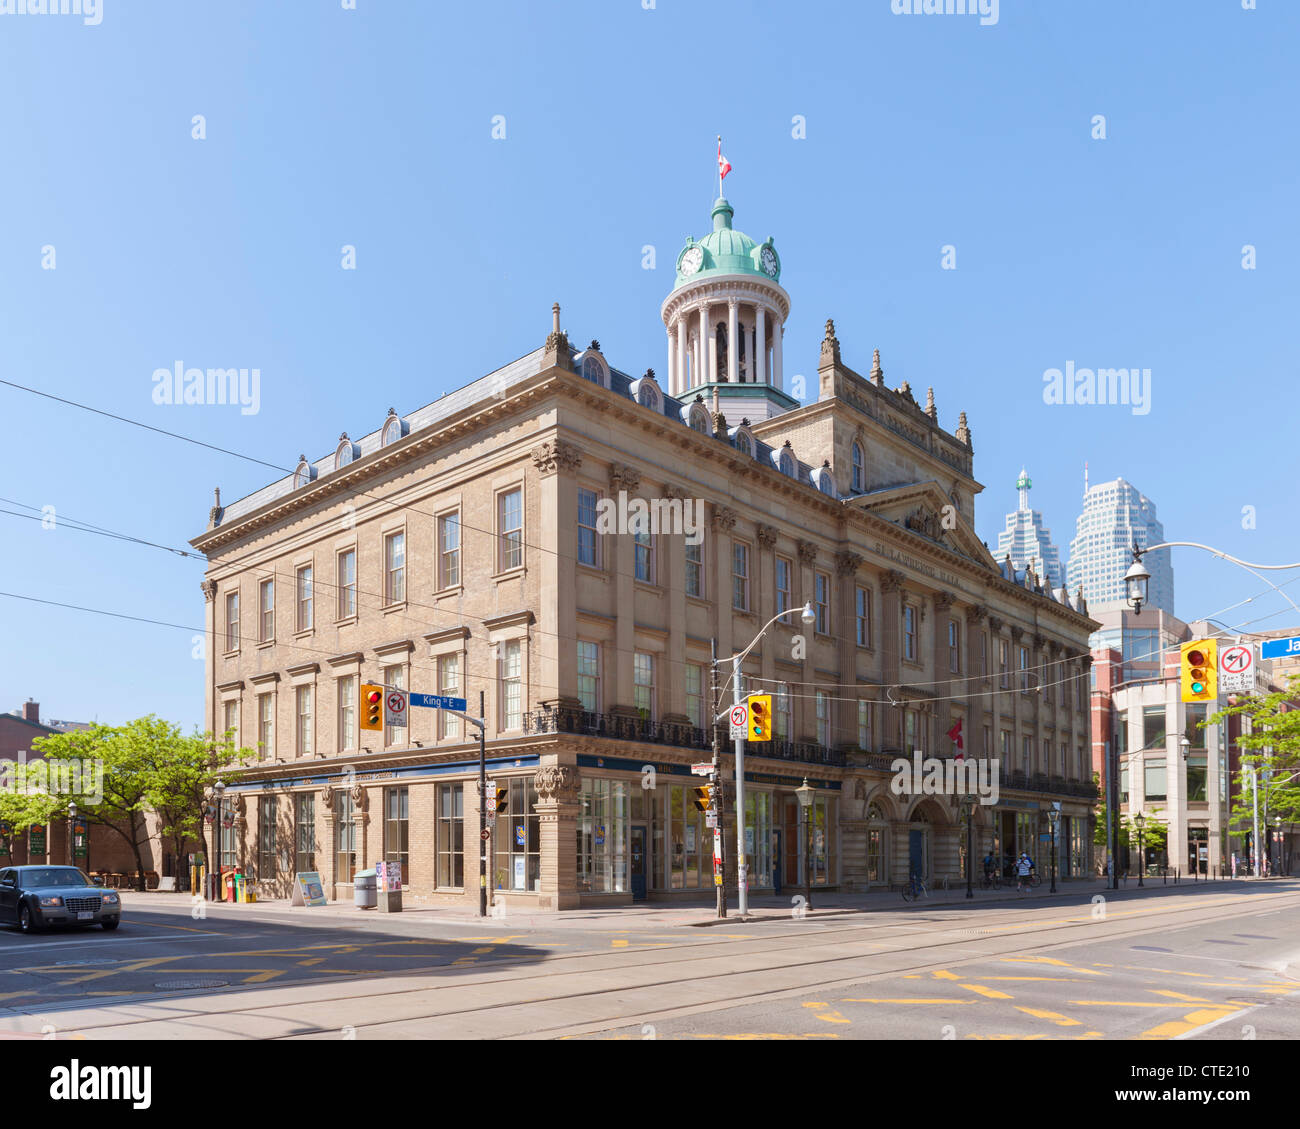 St Lawrence Hall, Toronto Stock Photo